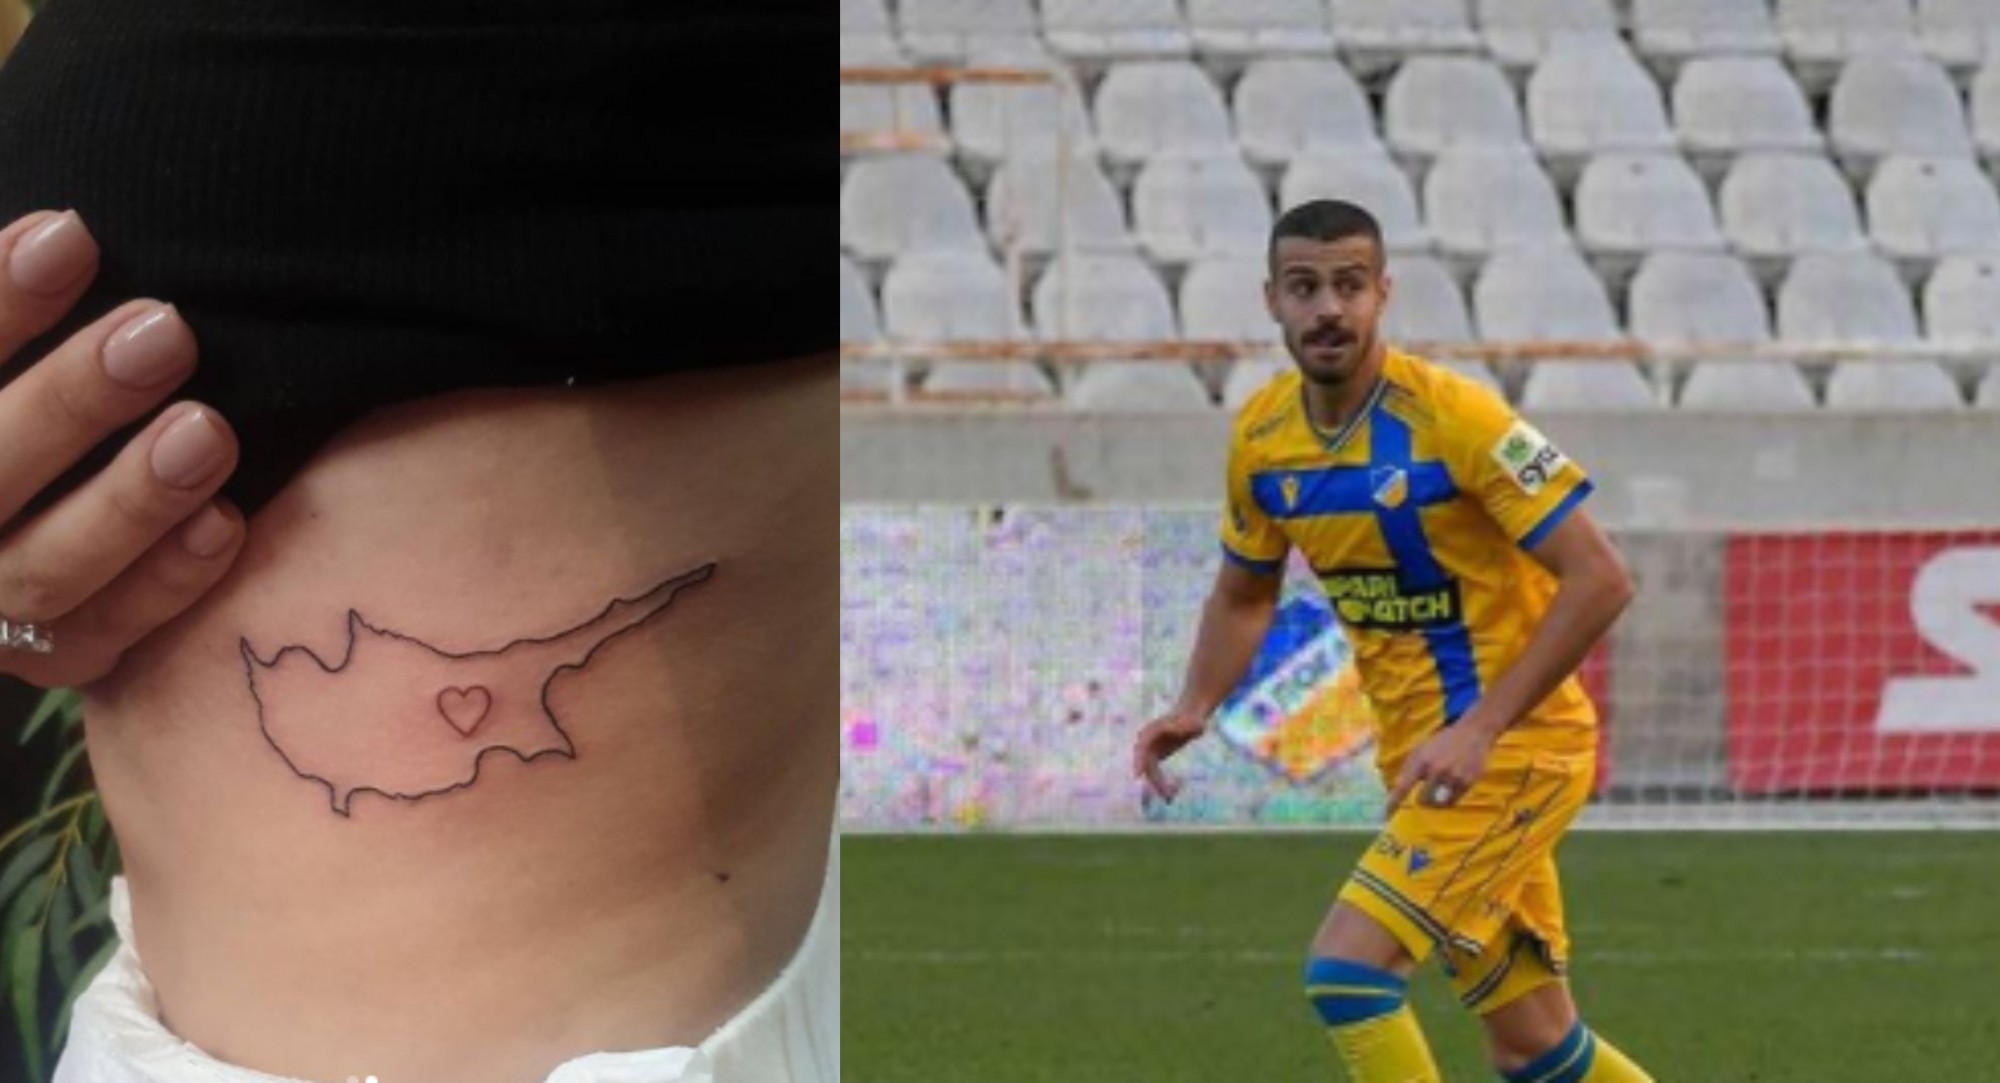 Σύντροφος πρώην ποδοσφαιριστή του ΑΠΟΕΛ έκανε την Κύπρο τατουάζ επάνω της